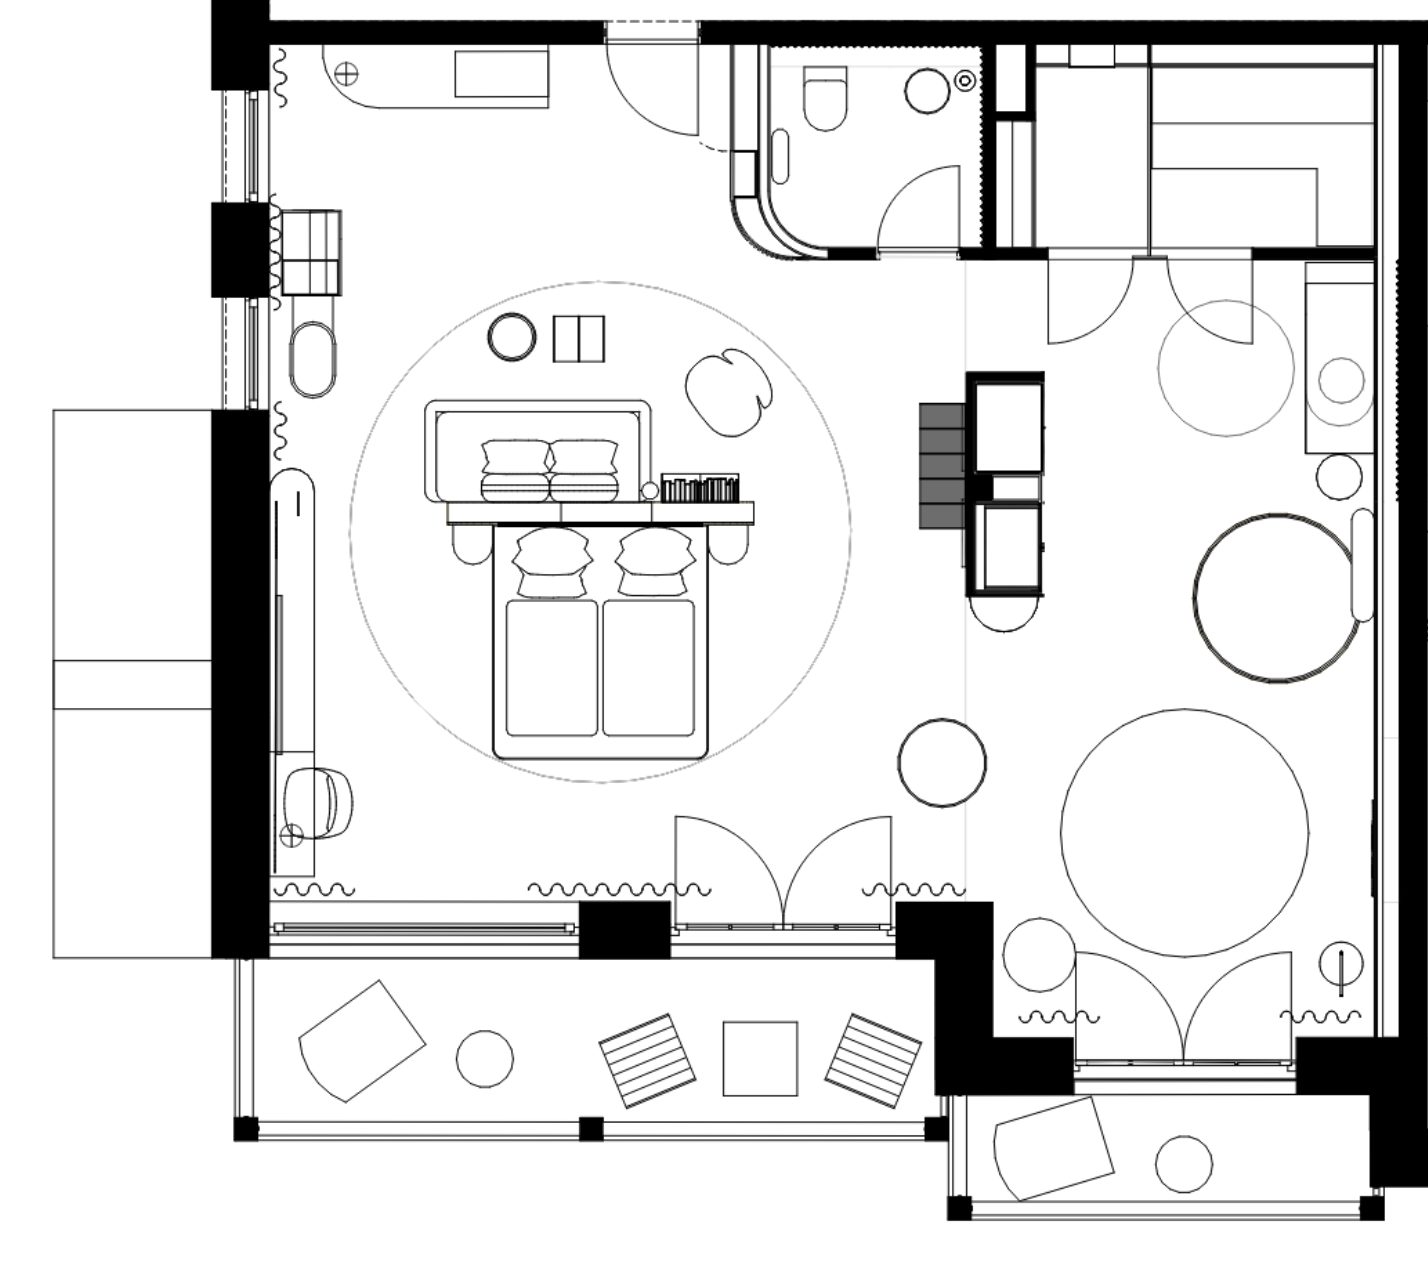 Example floor plan suite